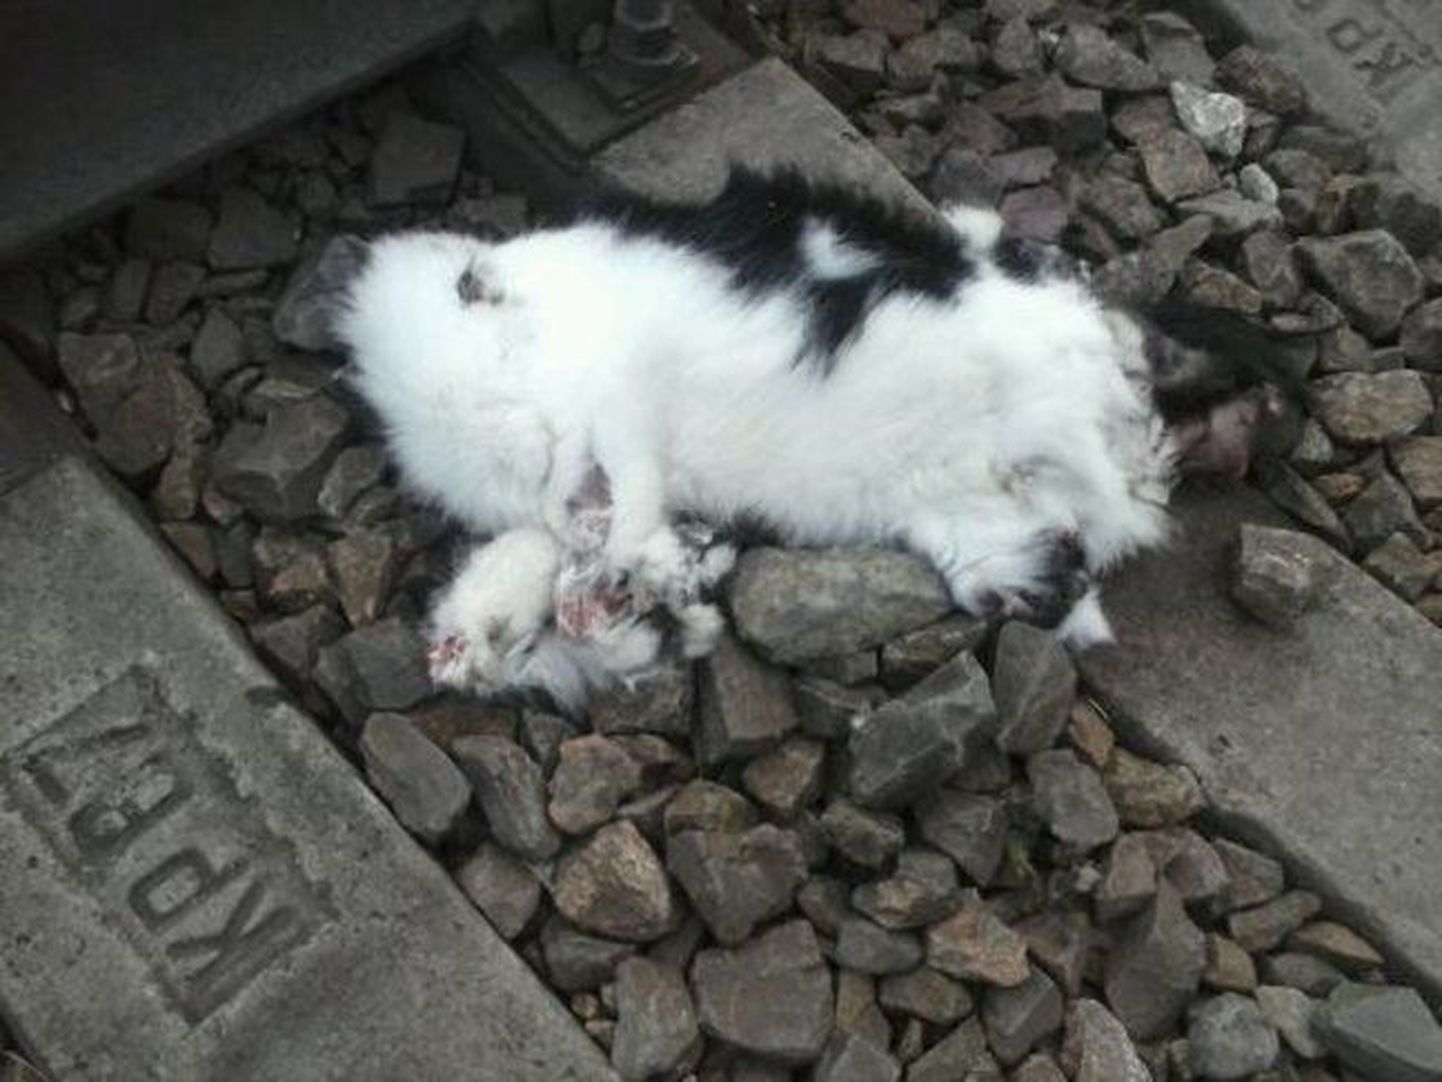 Прямо на железнодорожных рельсах был обнаружен изуродованный труп кошки.